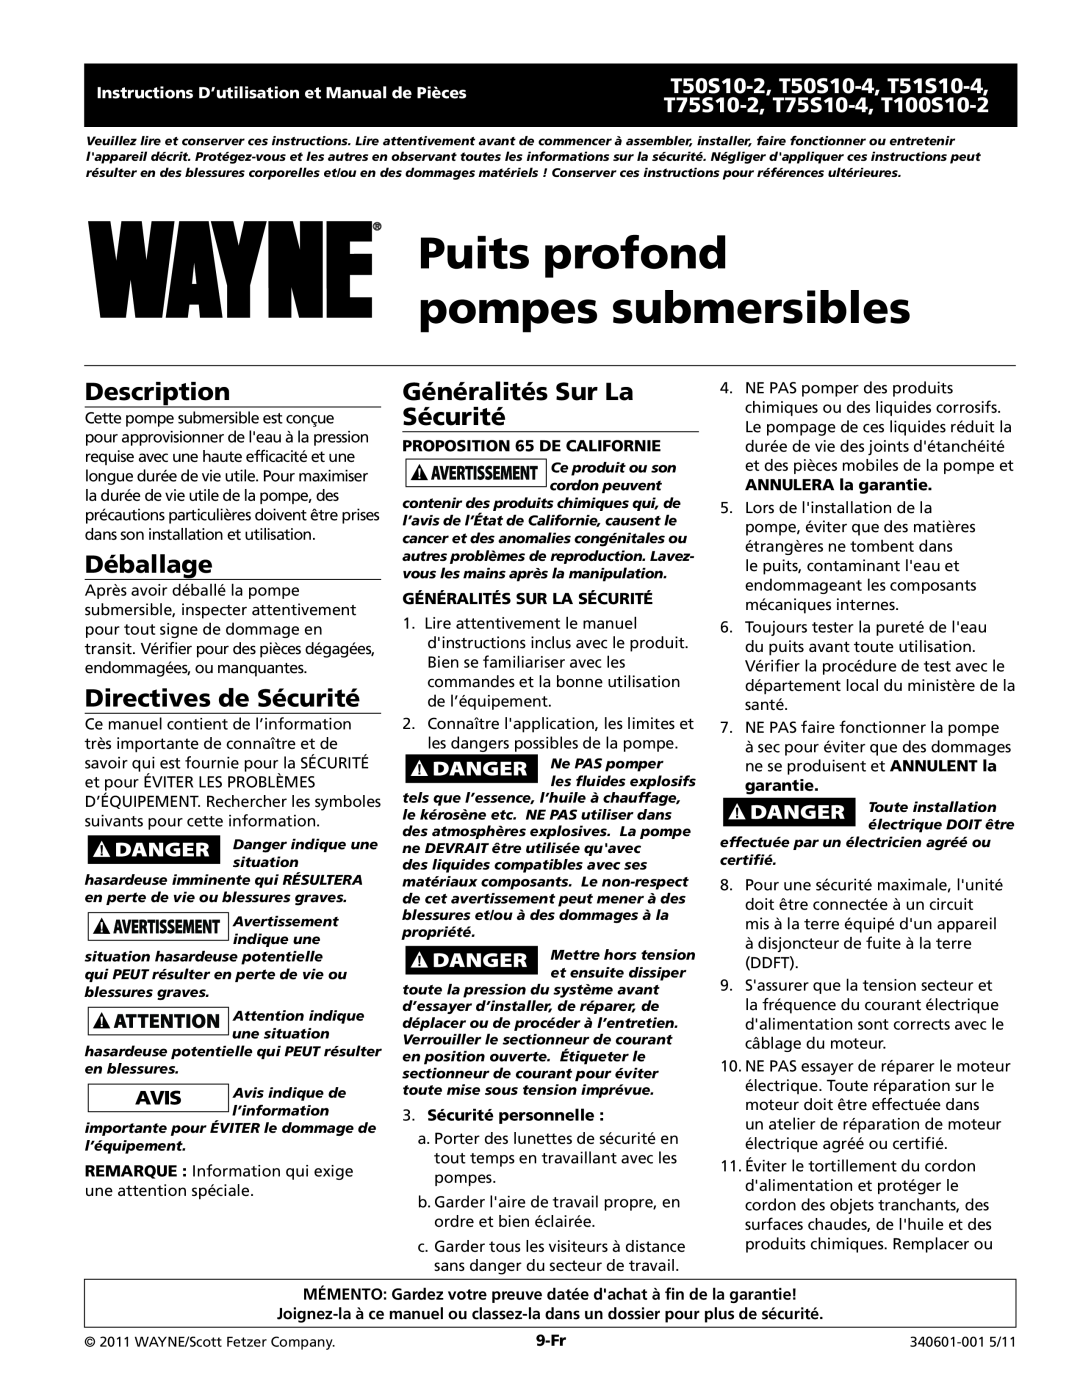 Wayne T75S10-4 Puits profond pompes submersibles, Déballage, Directives de Sécurité, Généralités Sur La Sécurité, 9-Fr 